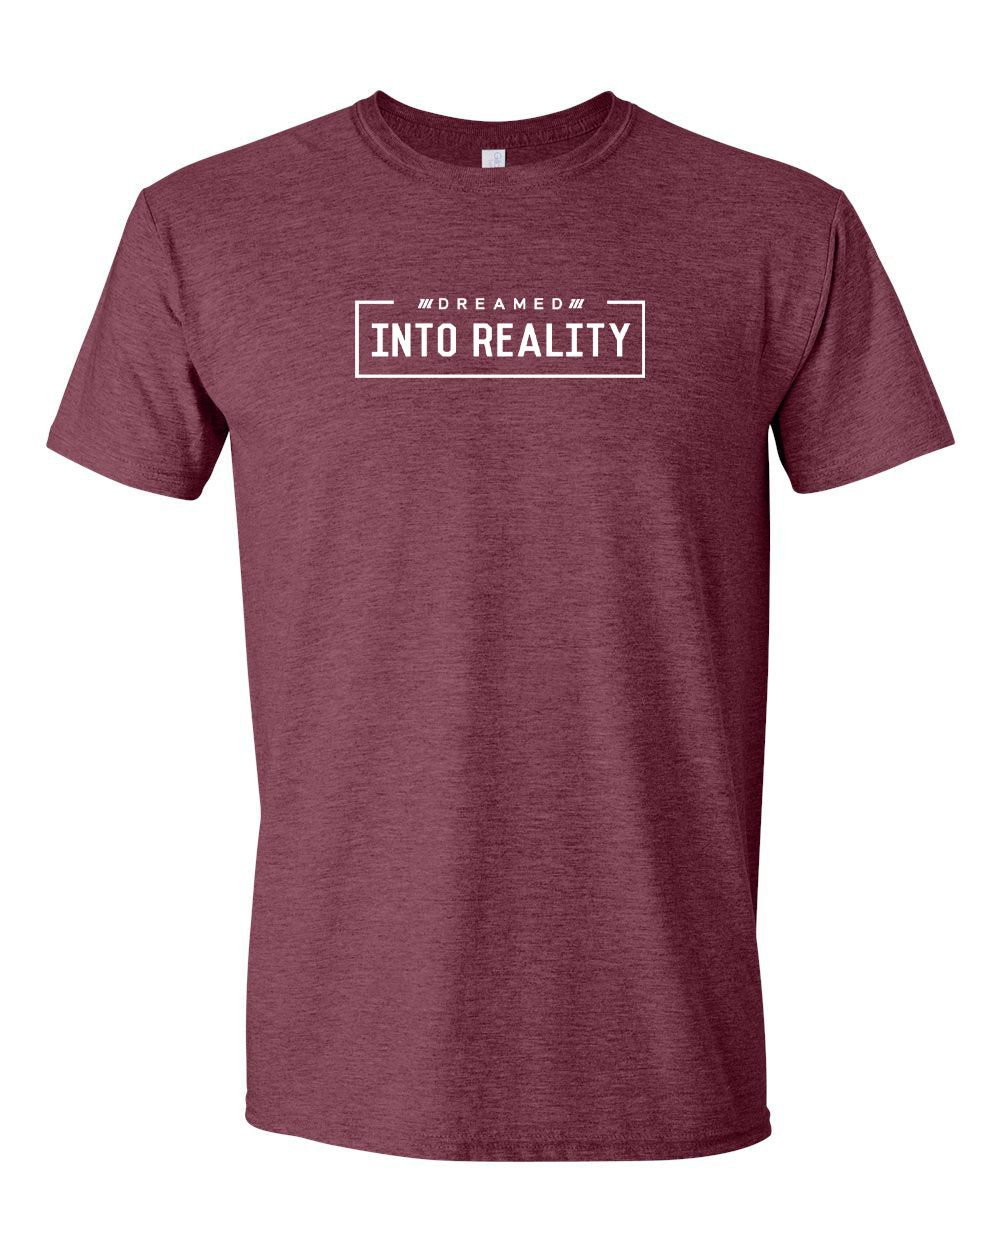 Dream Into Reality Shirt - Maroon